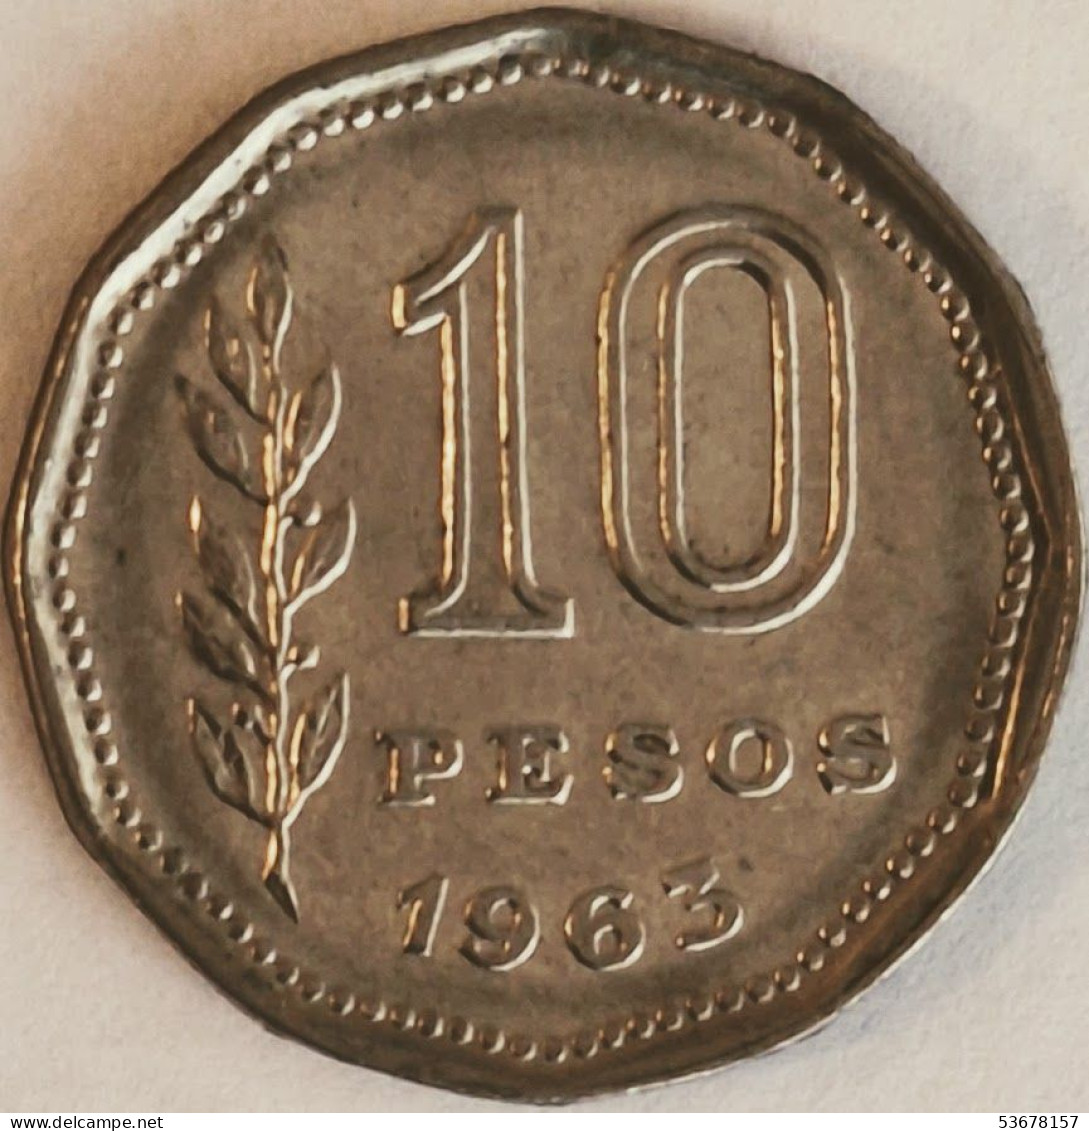 Argentina - 10 Pesos 1963, KM# 60 (#2749) - Argentine